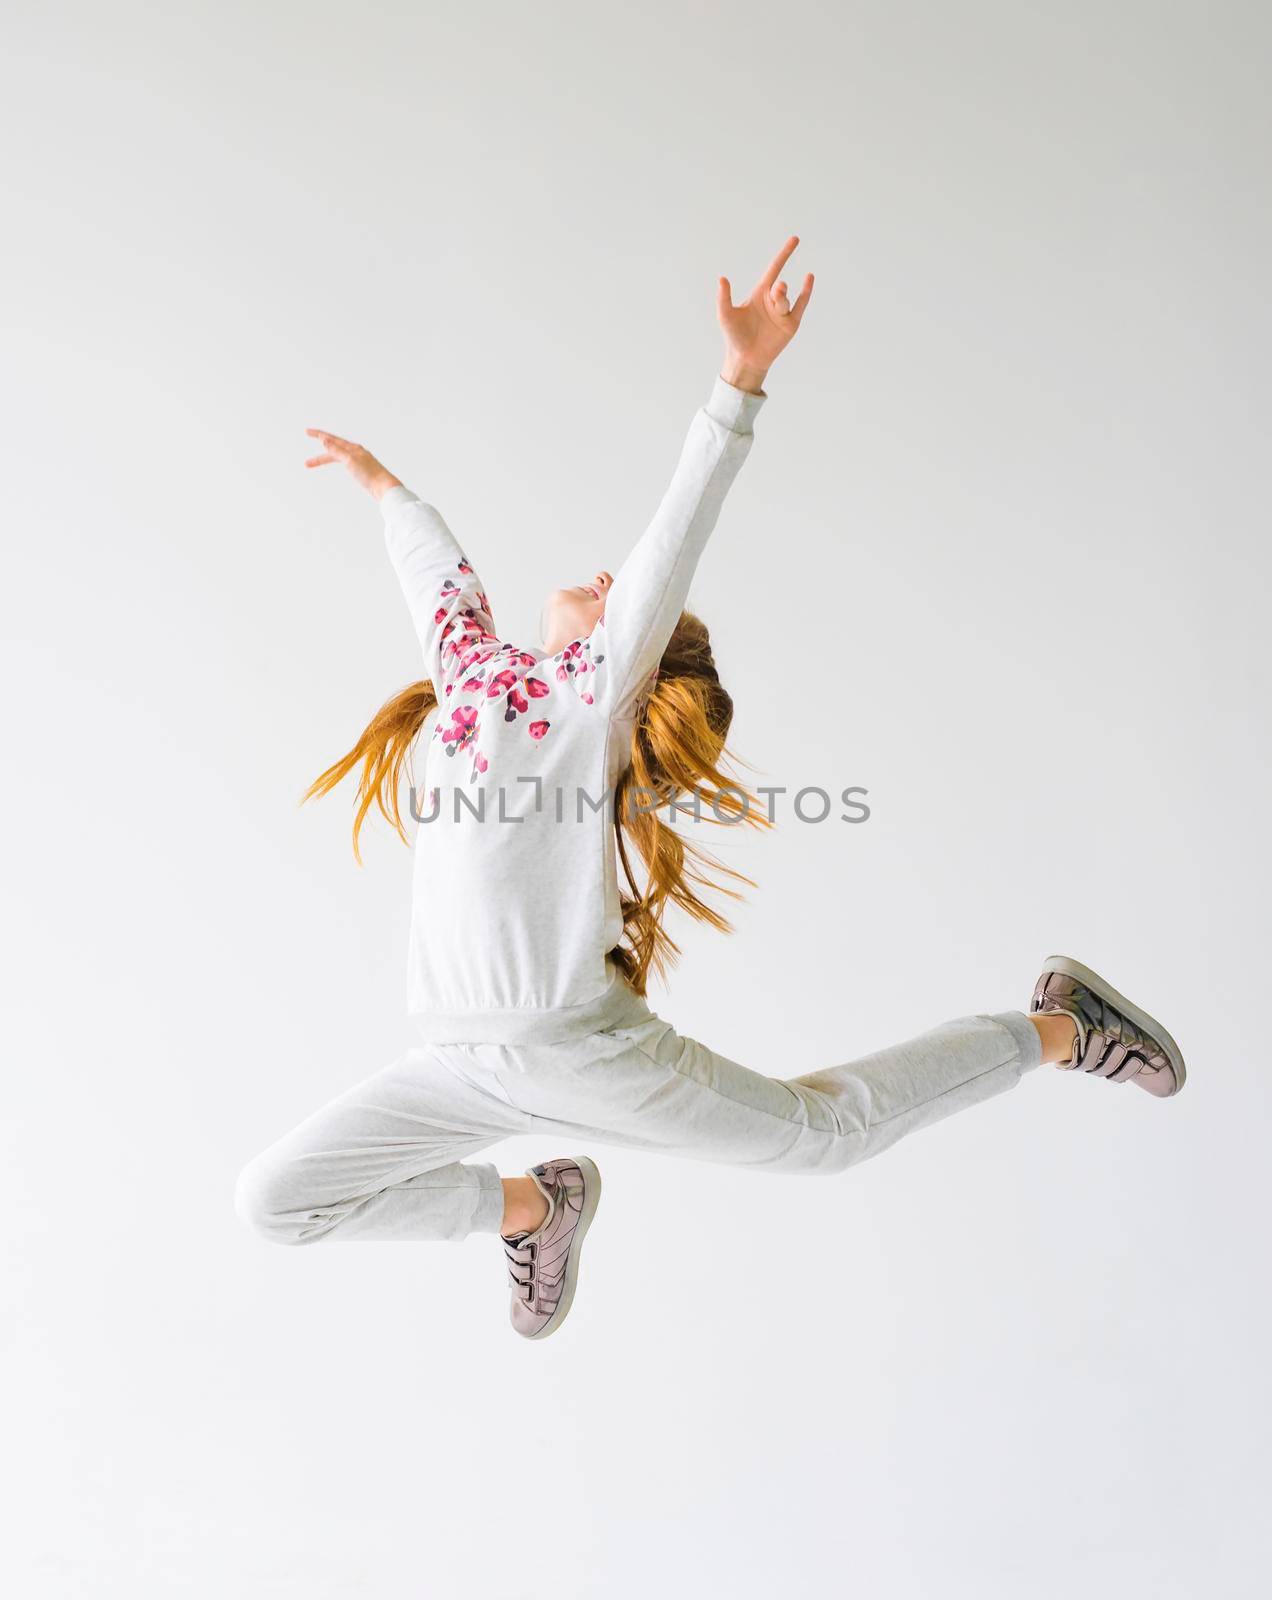 Teenage girl do a split leap in the air. by GekaSkr